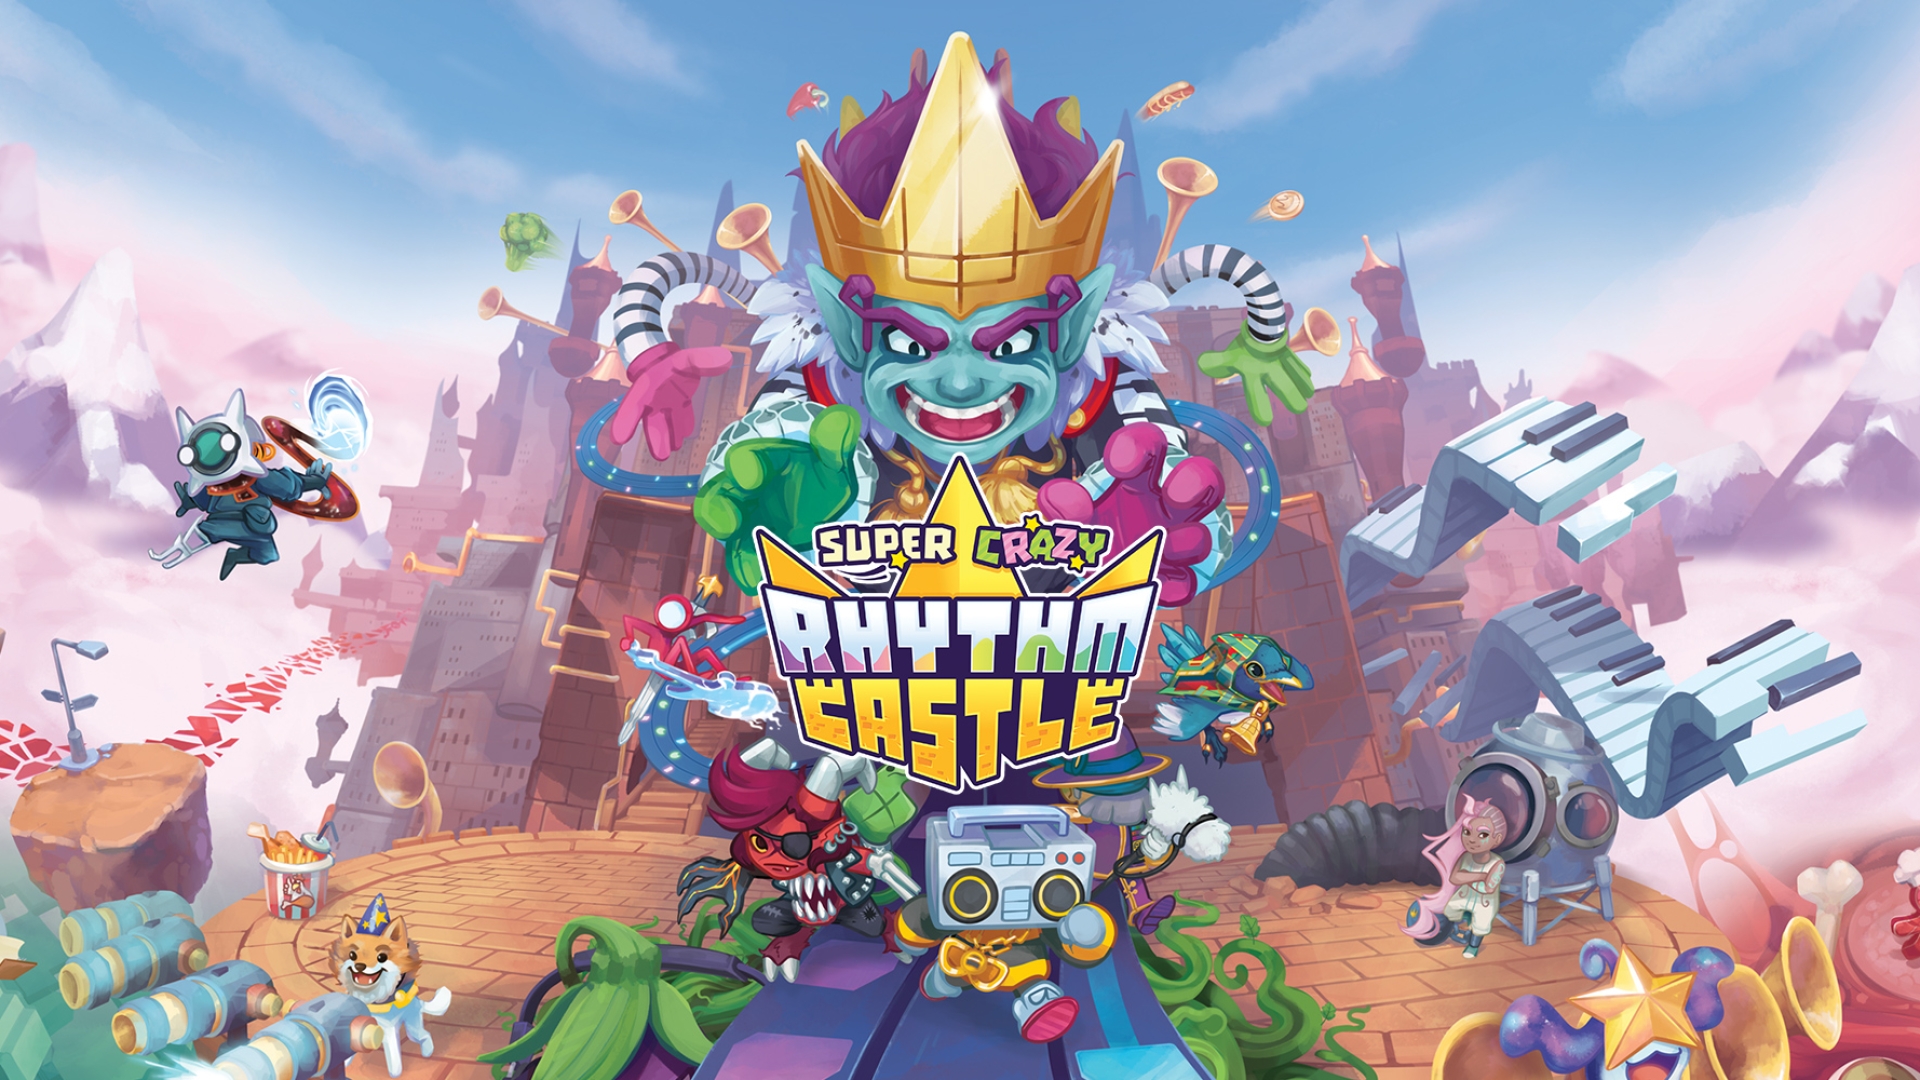 La demo di “Super Crazy Rhythm Castle” disponibile in occasione dello Steam Next Fest